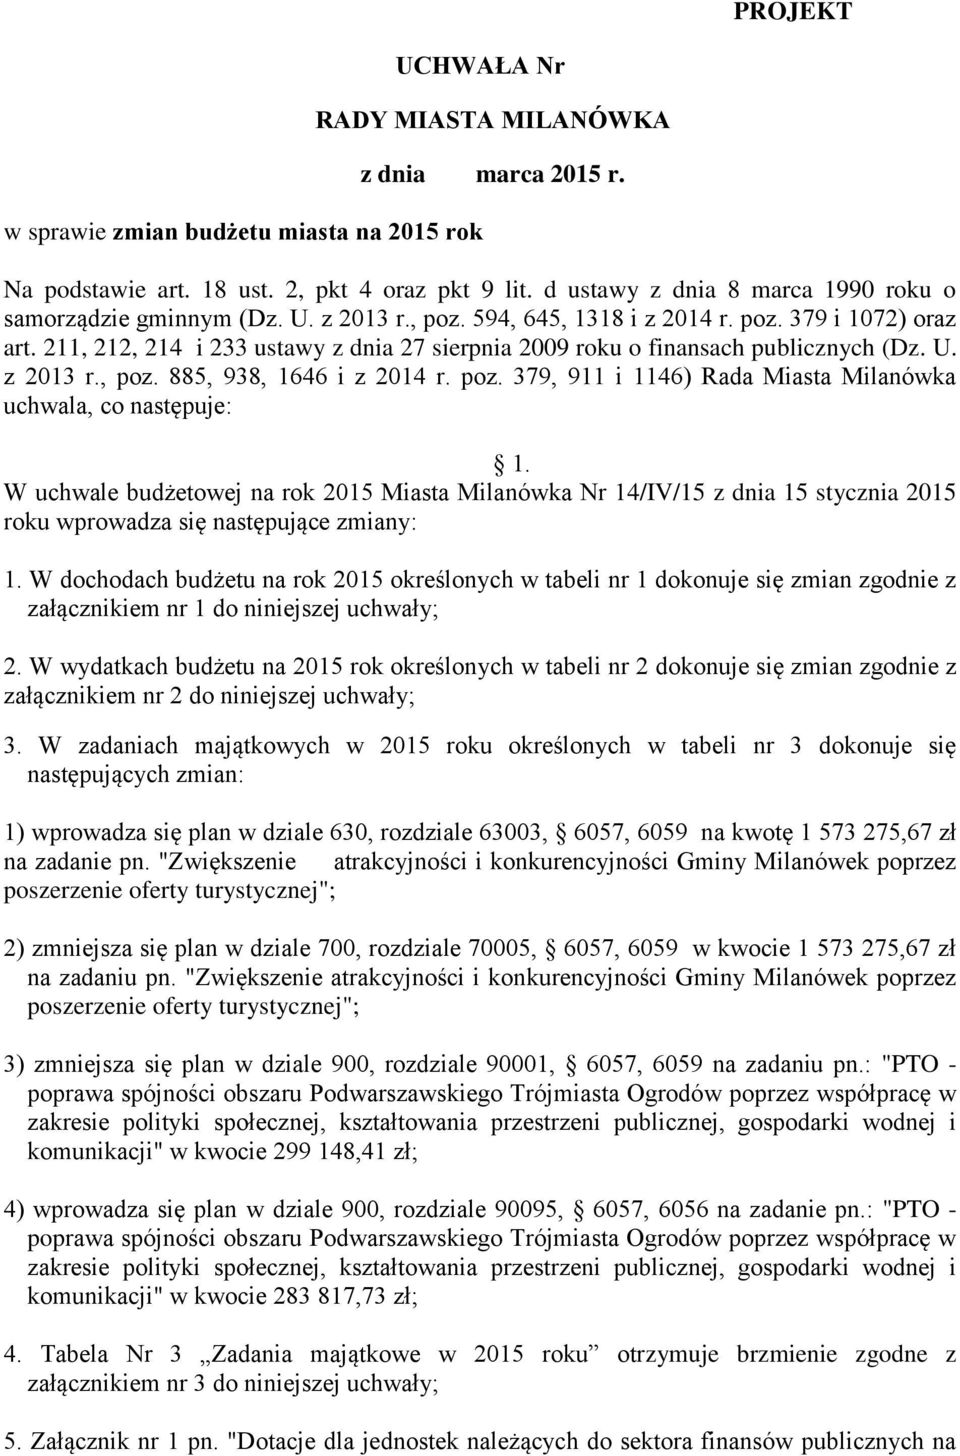 211, 212, 214 i 233 ustawy z dnia 27 sierpnia 2009 roku o finansach publicznych (Dz. U. z 2013 r., poz. 885, 938, 1646 i z 2014 r. poz. 379, 911 i 1146) Rada Miasta Milanówka uchwala, co następuje: 1.